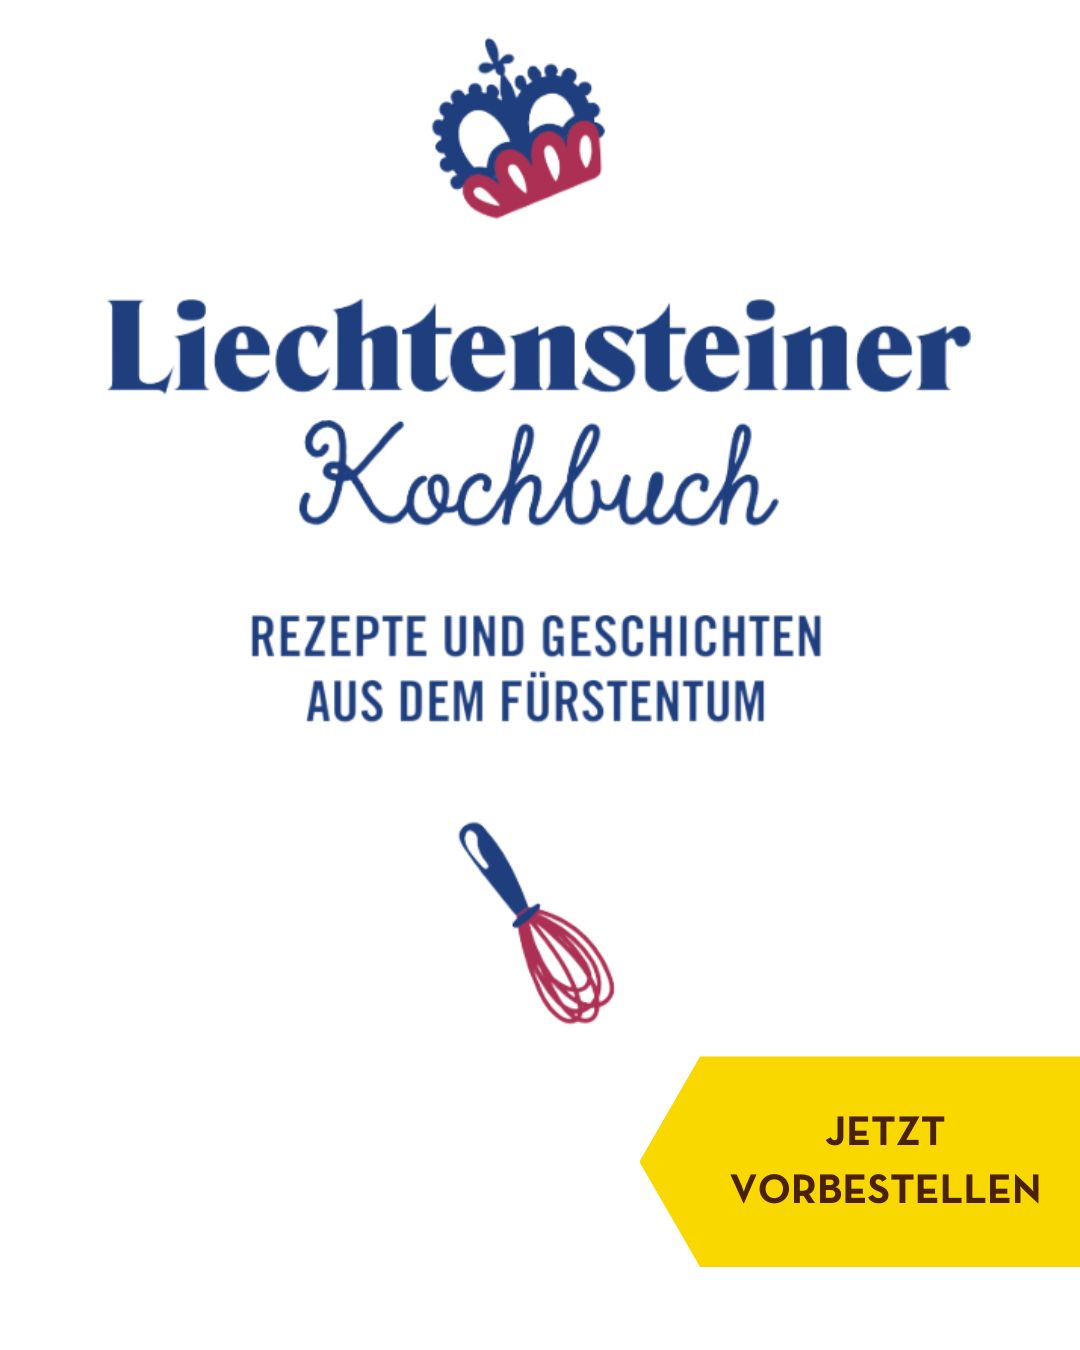 Liechtensteiner-Kochbuch-Vorbestellung